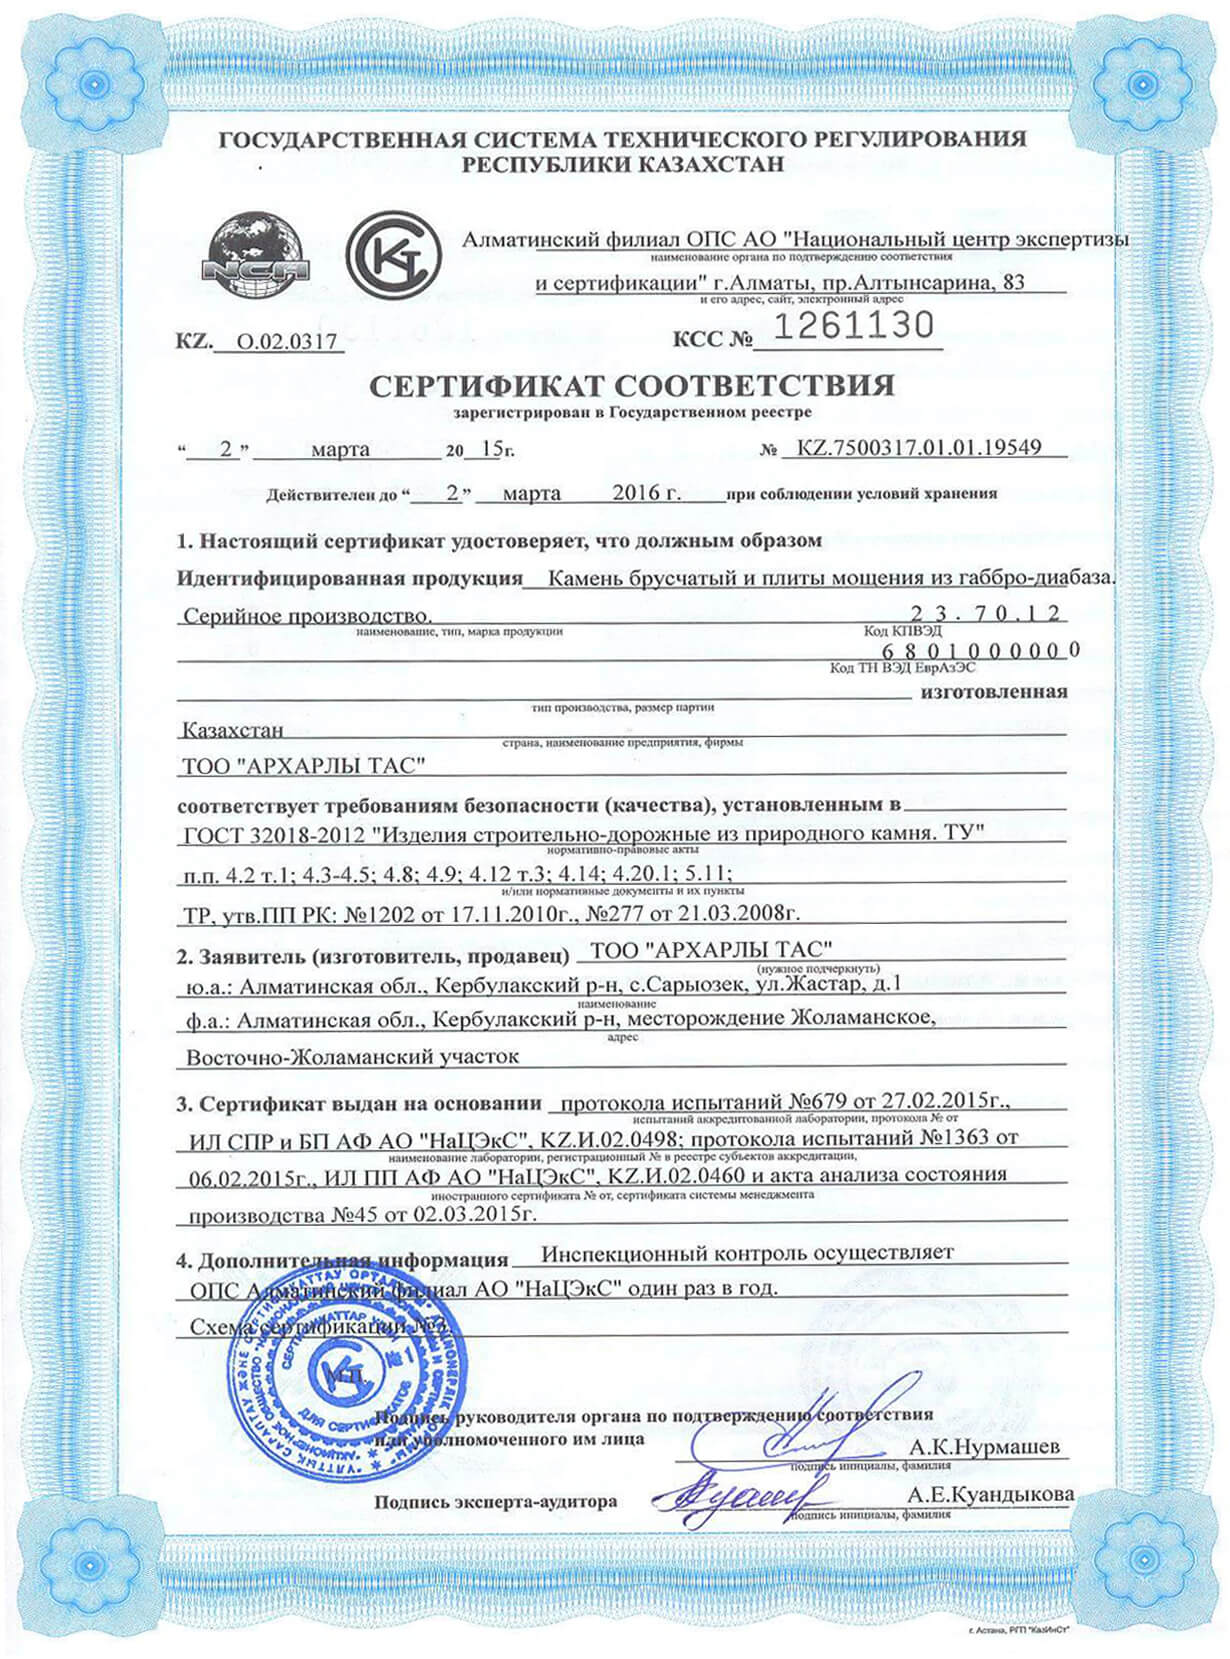 Сертификат соотвествия тыл